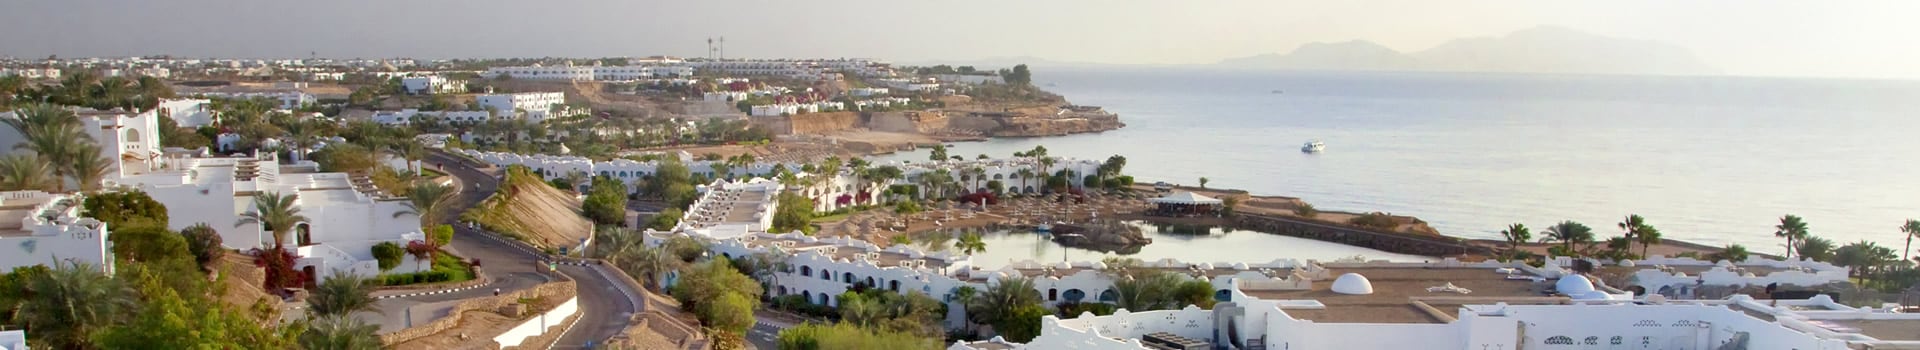 Bari - Sharm El Sheikh